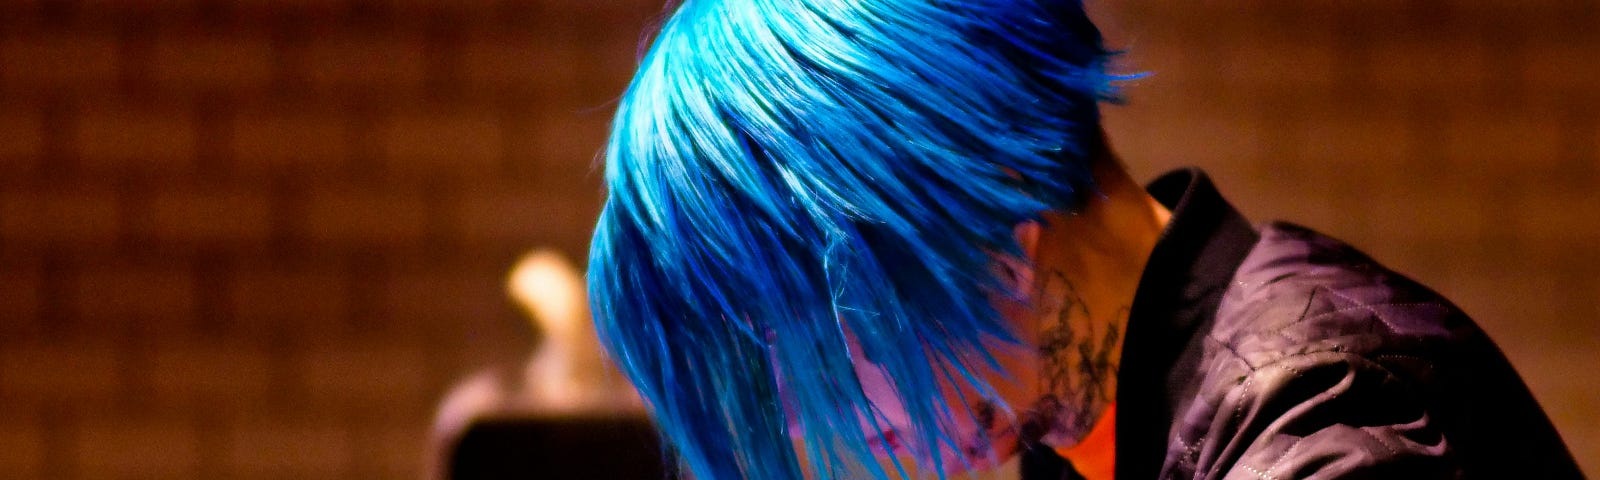 A punk rock fan with blue hair